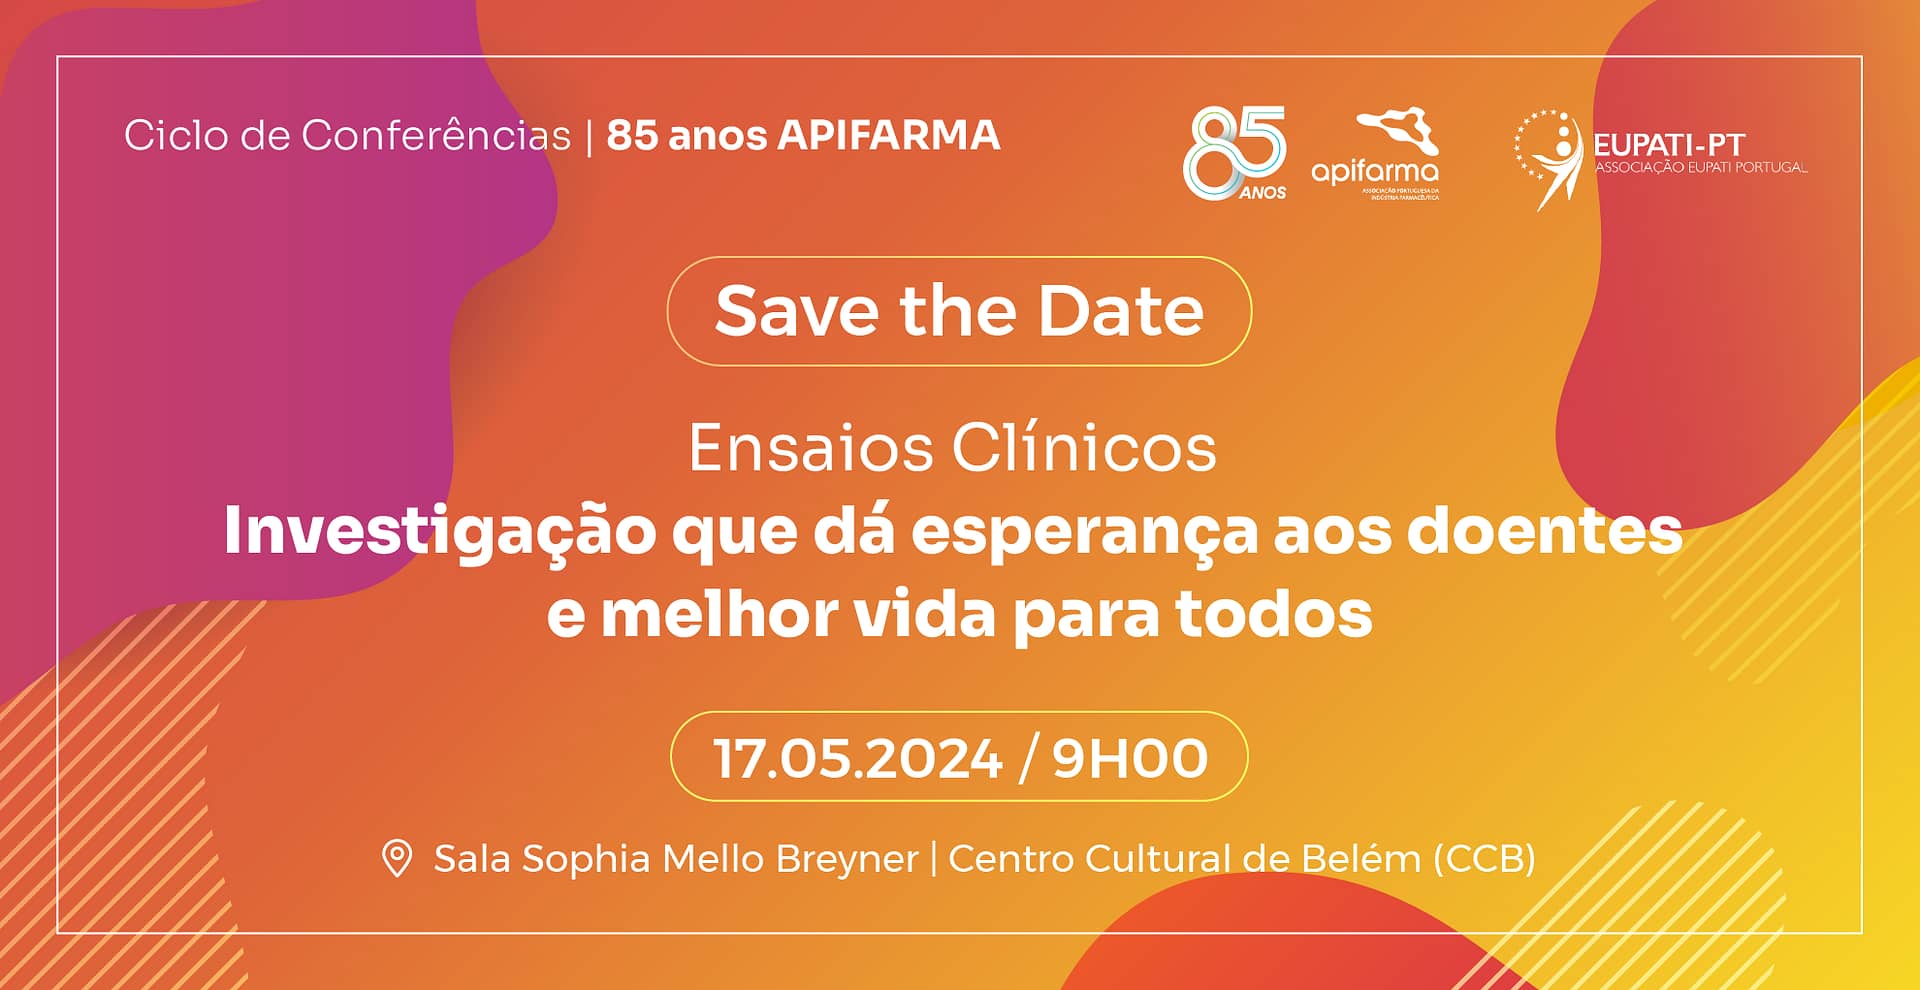 APIFARMA - Associação Portuguesa da Indústria Farmacêutica